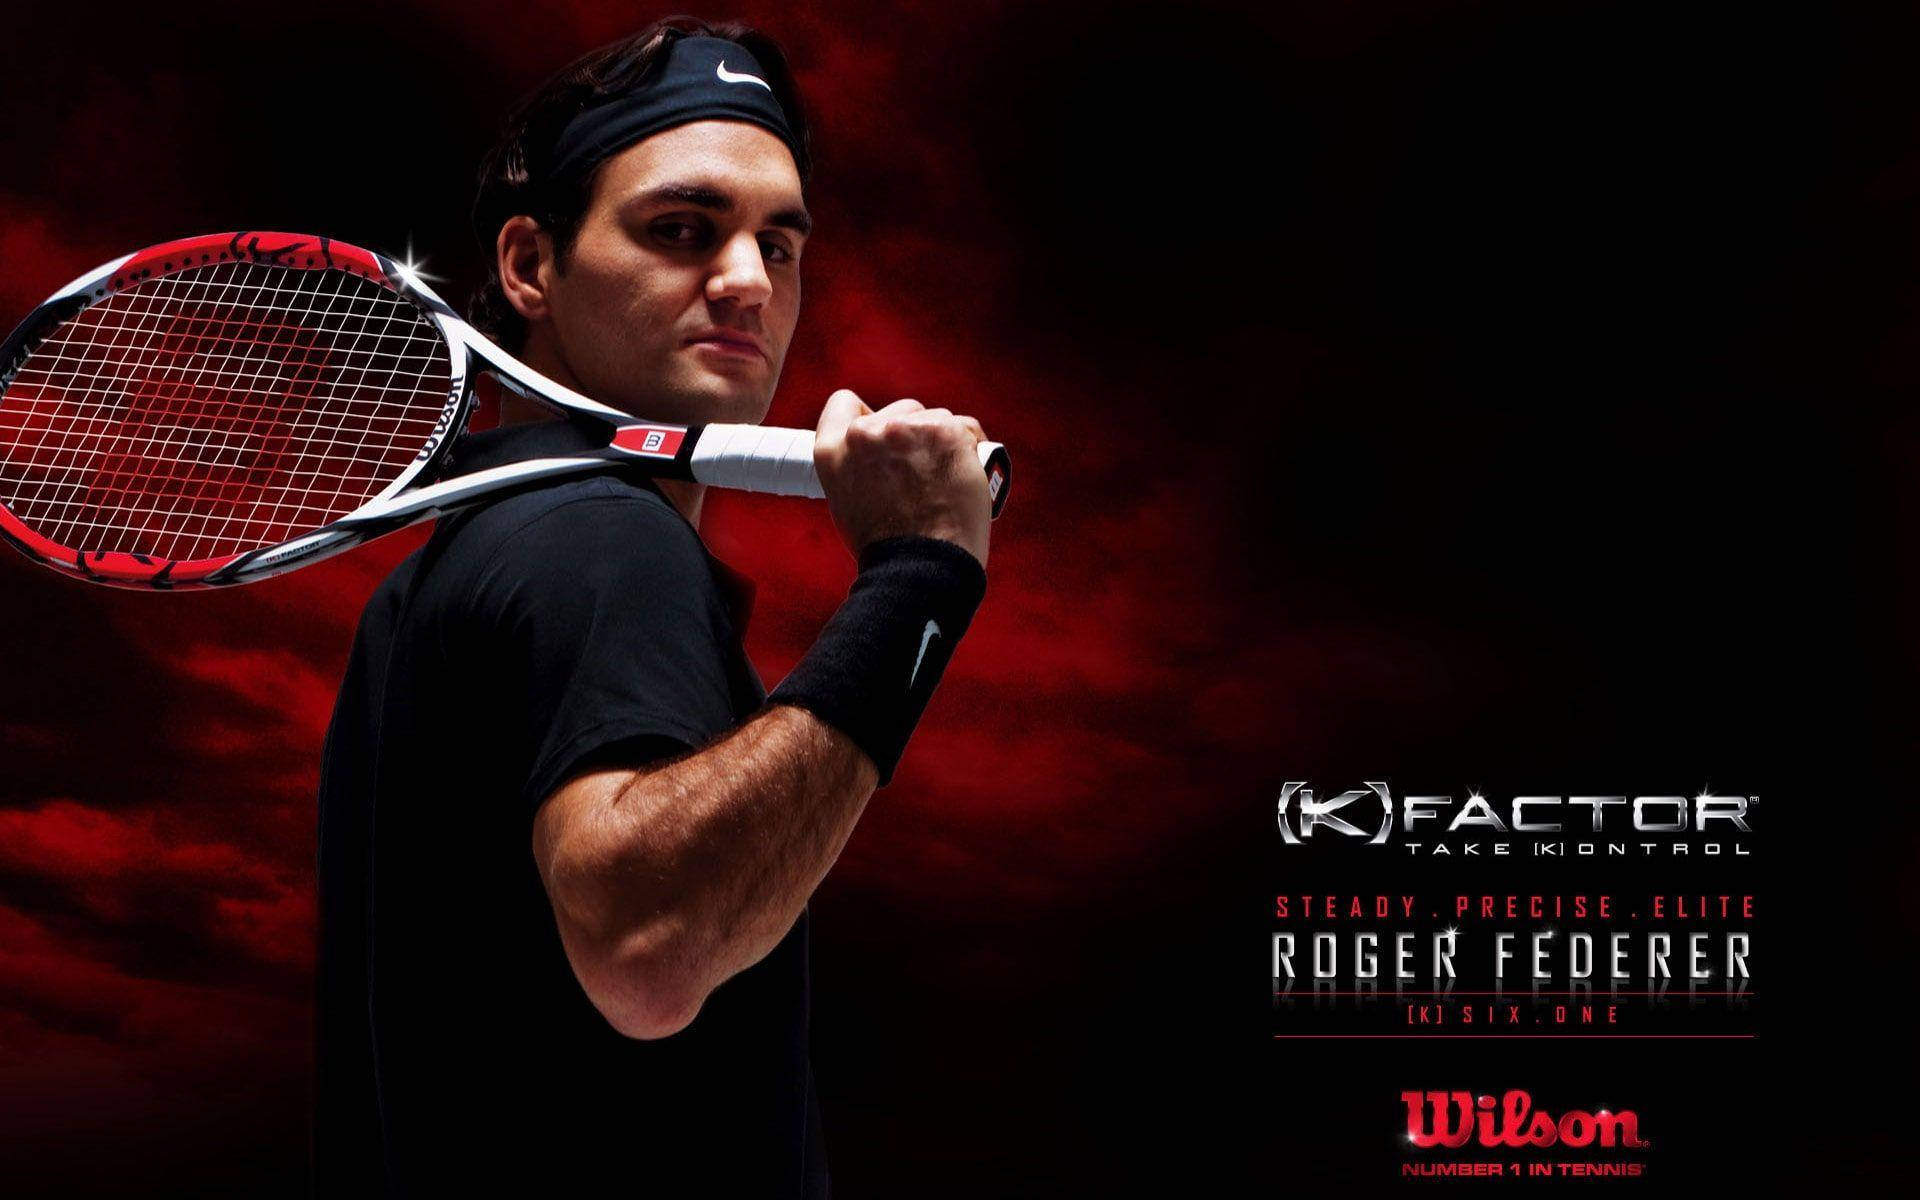 Roger Federer Wilson Factor Tennis